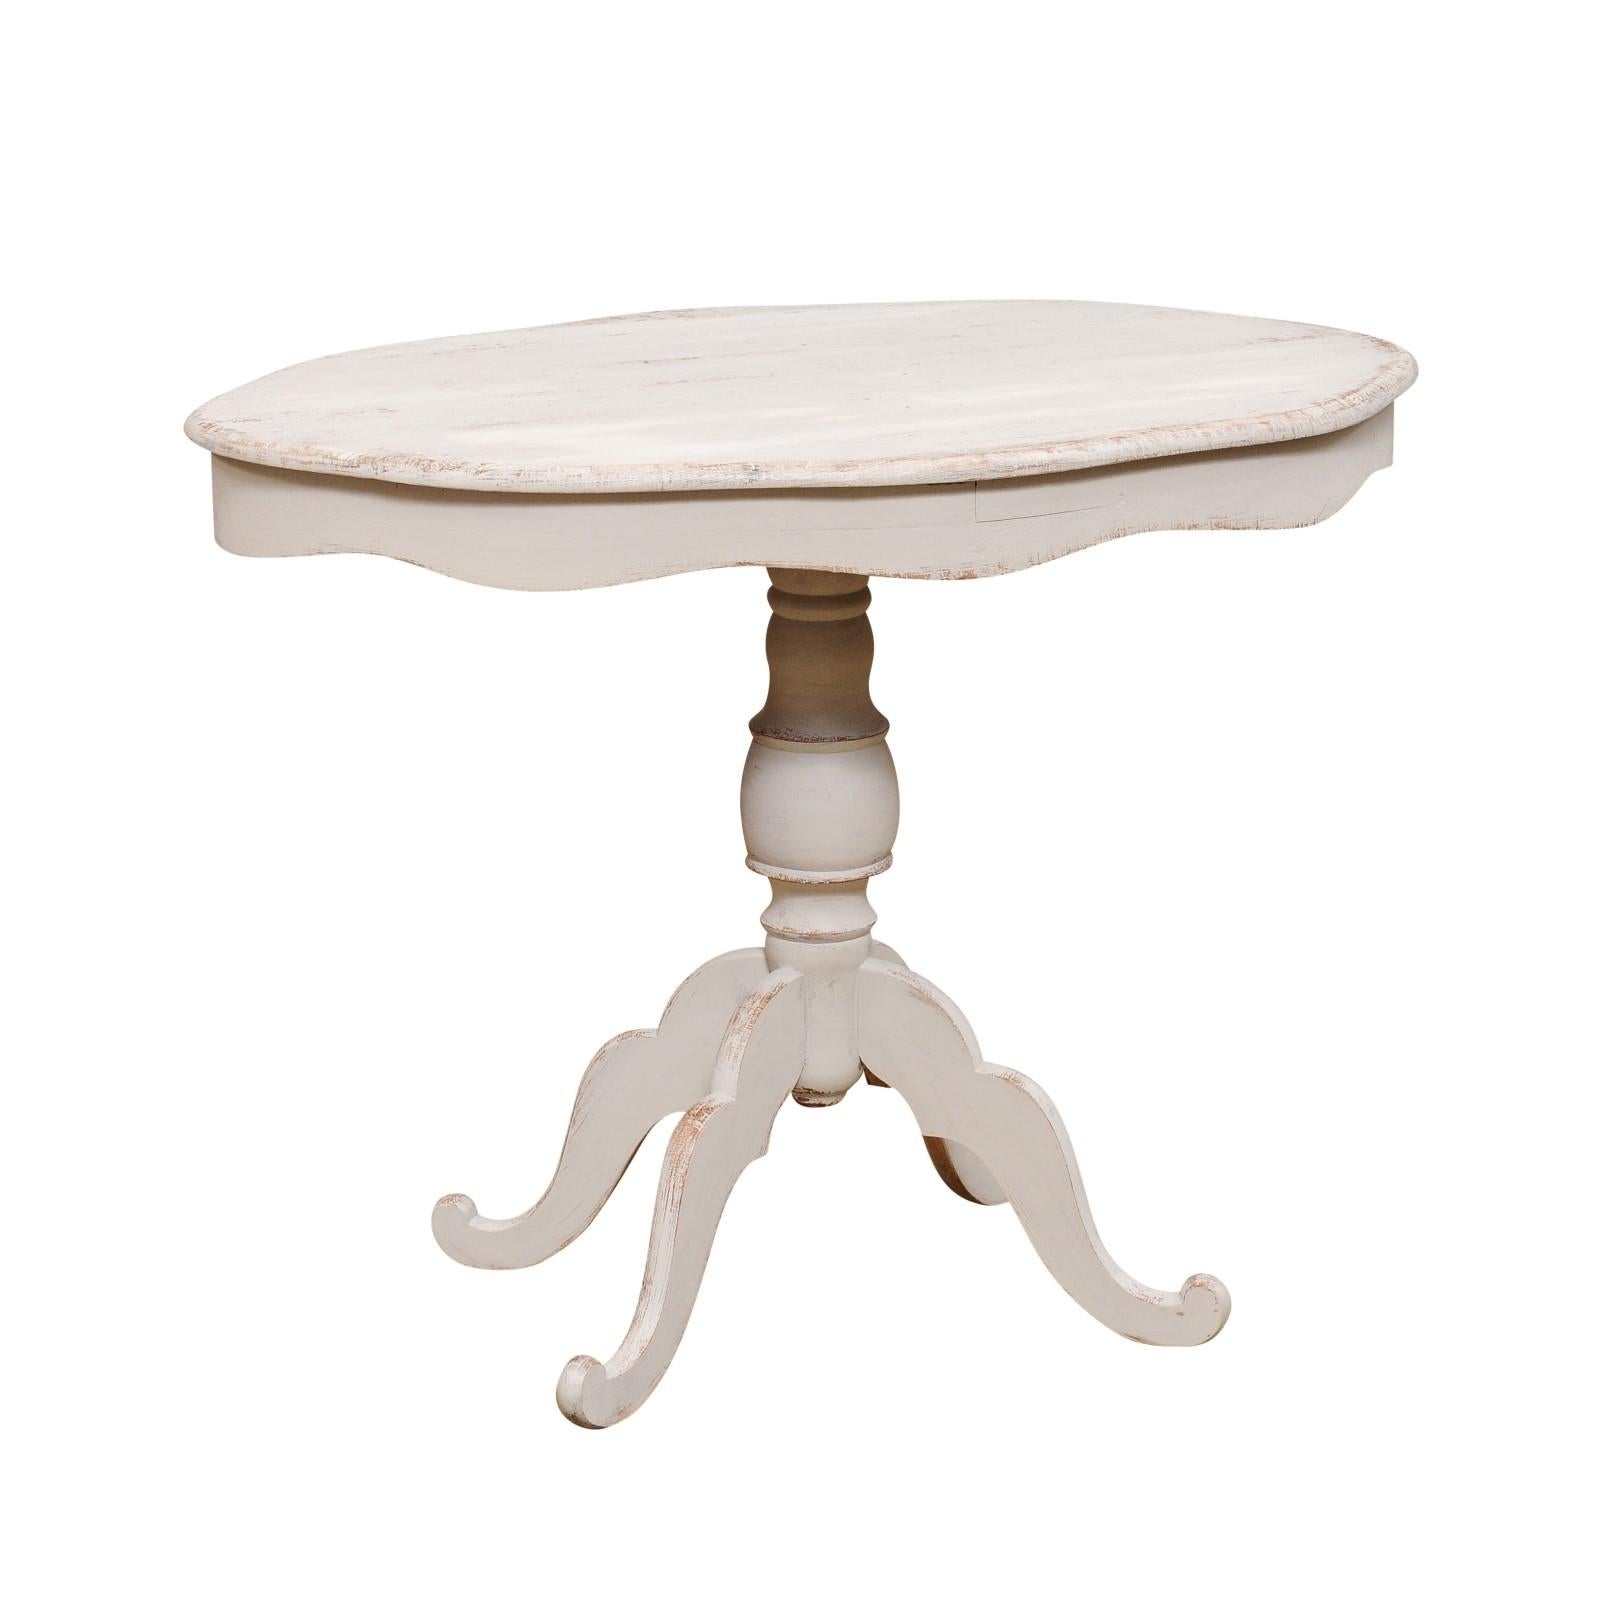 Ein schwedischer, bemalter Holzsockeltisch mit ovaler Platte um 1860 mit geschnitzter, gewellter Schürze, gedrechseltem Sockel und vierbeinigem Fuß. Lassen Sie sich vom skandinavischen Design verführen mit diesem charmanten ovalen Sockeltisch aus